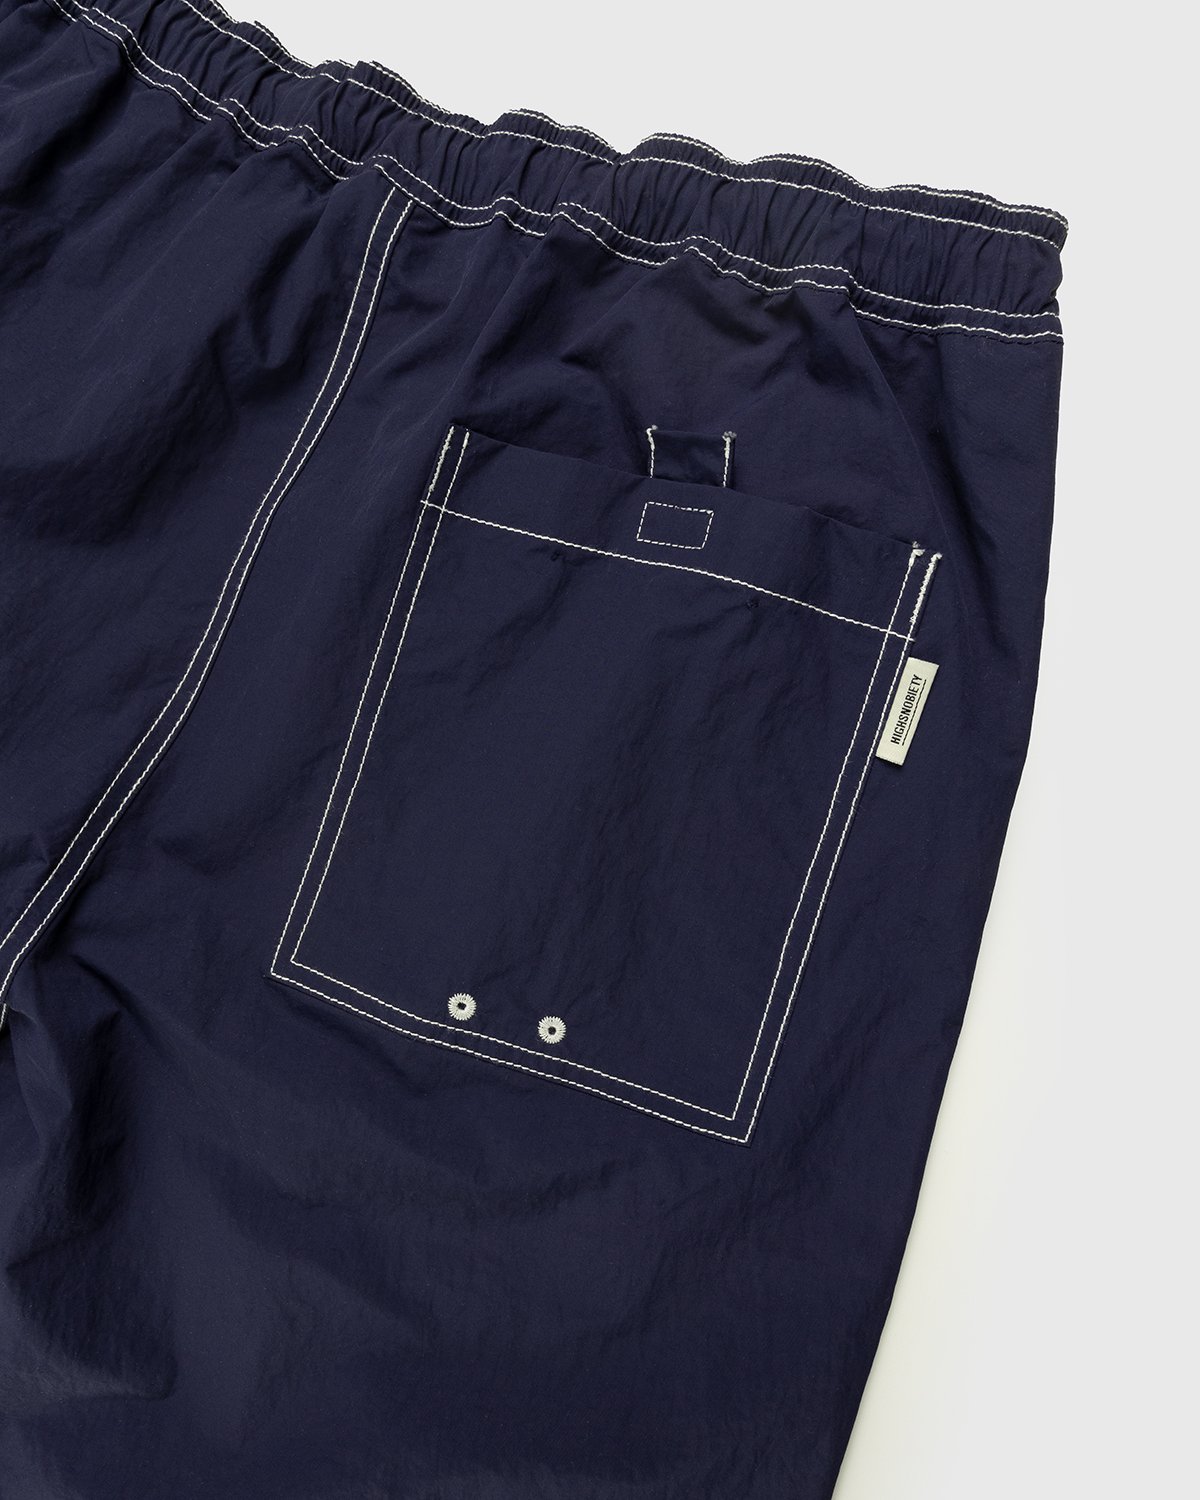 Highsnobiety - Contrast Brushed Nylon Elastic Pants Navy - Clothing - Blue - Image 3